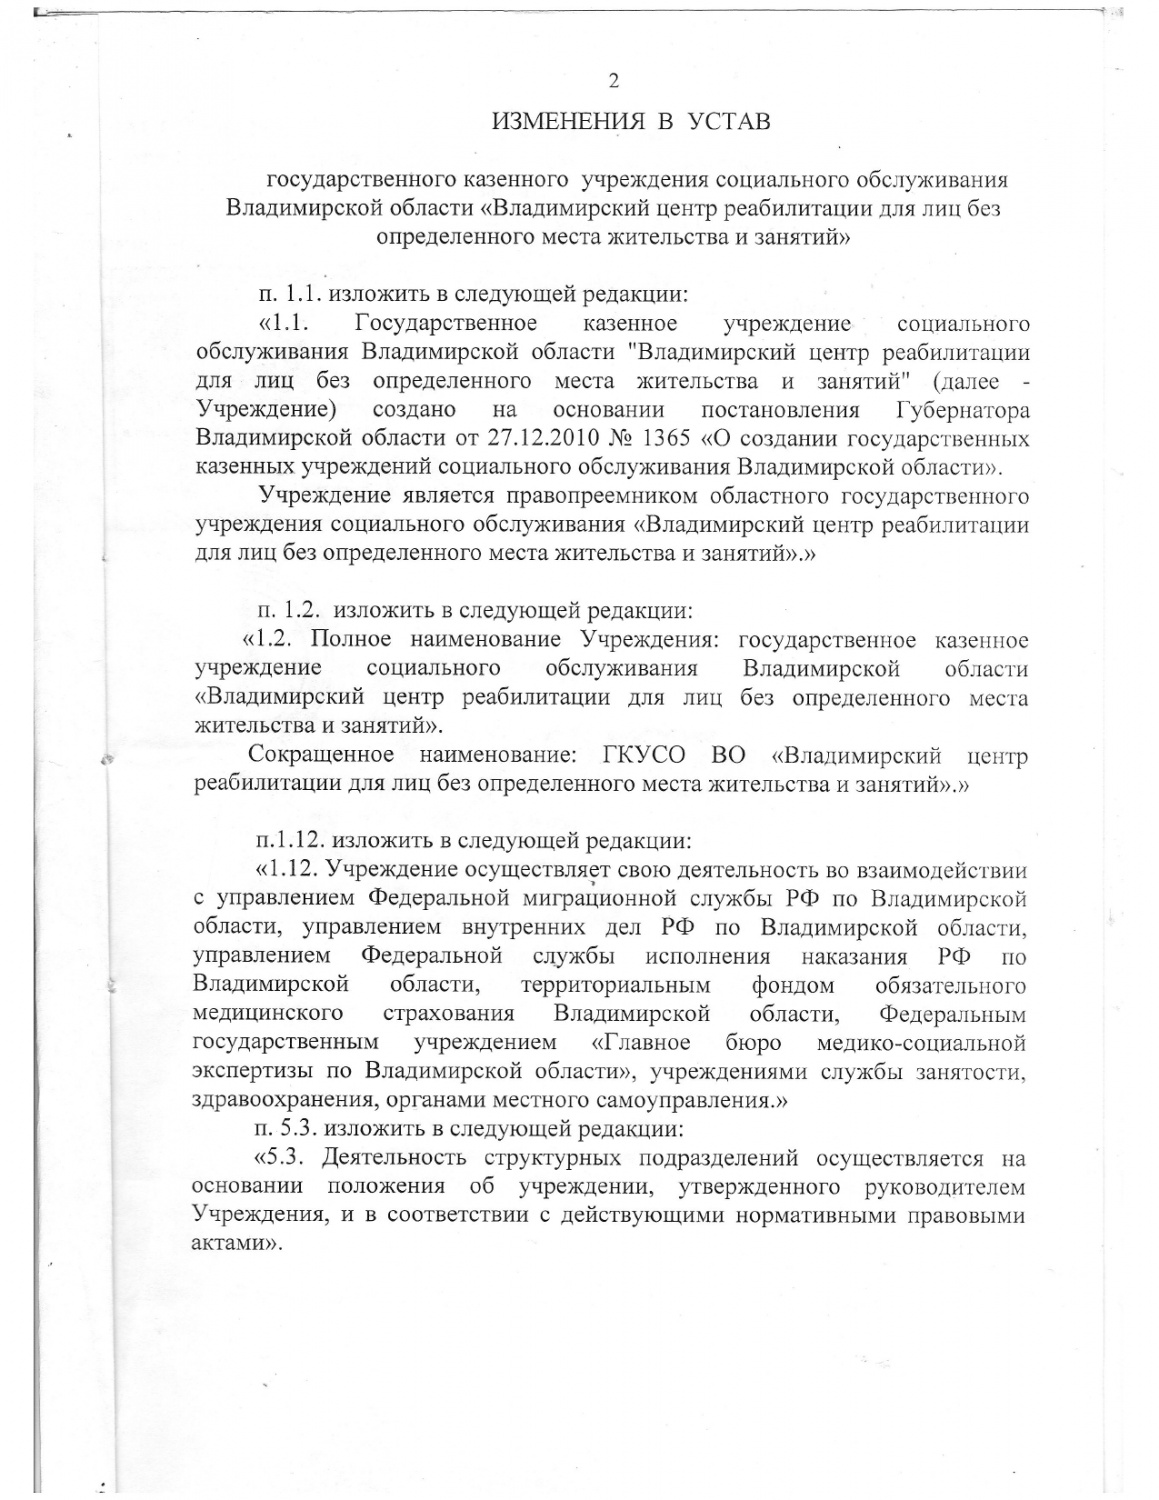 изменения в устав 2011_page-0001.jpg